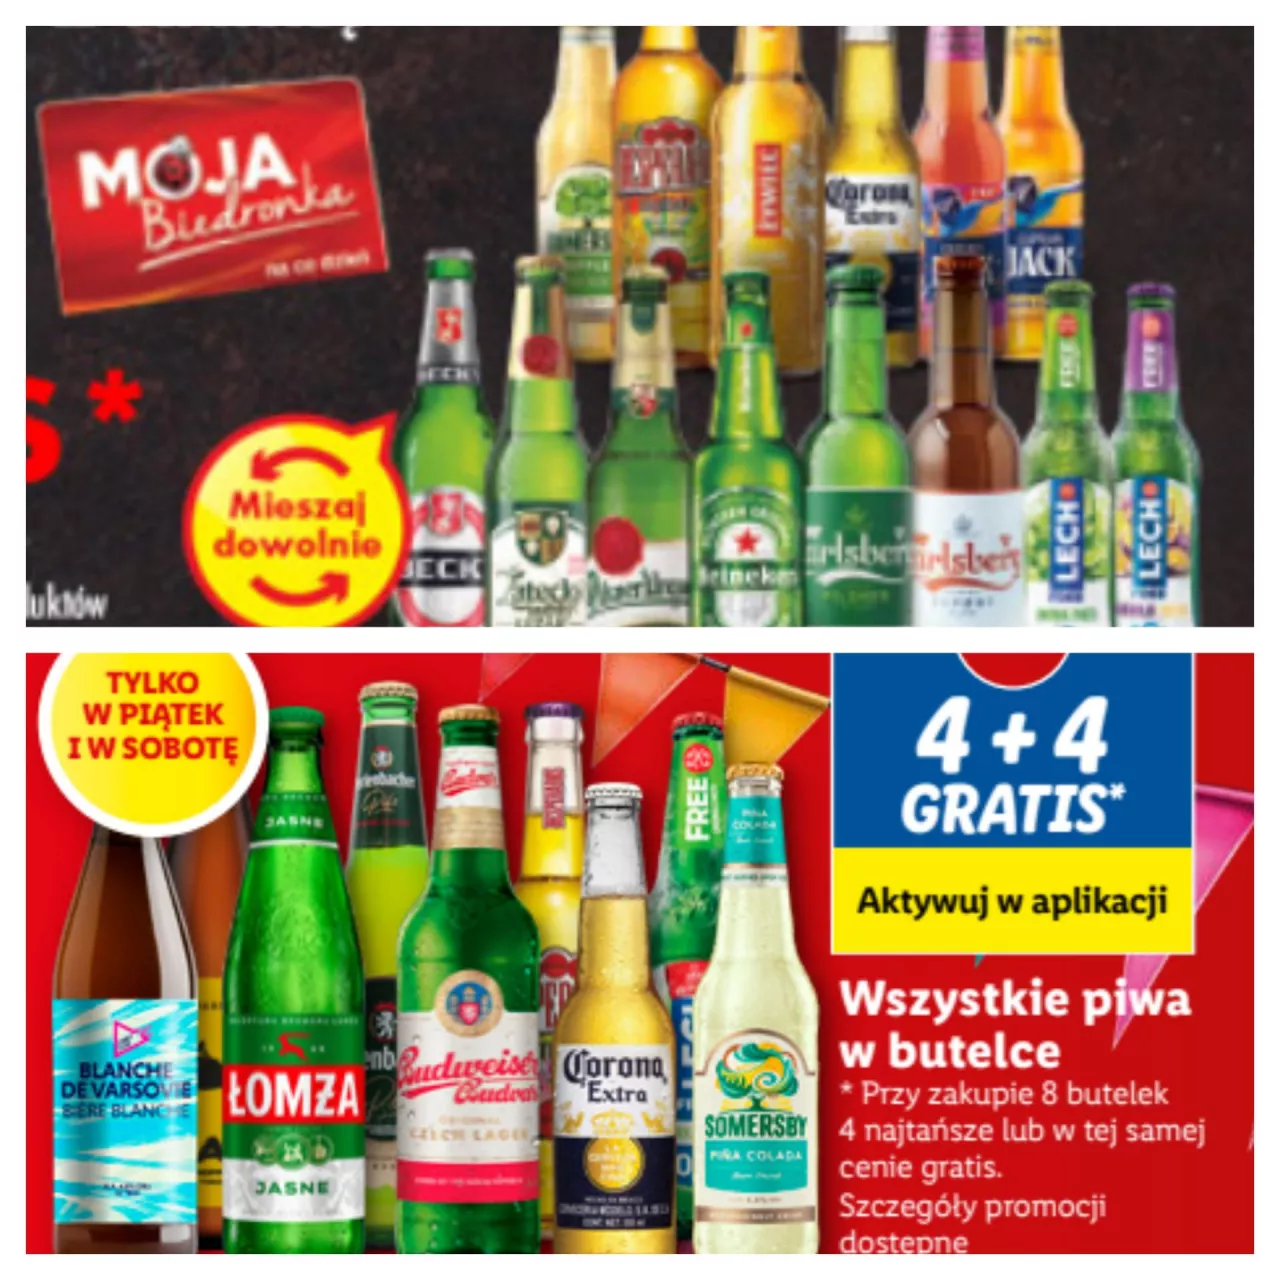 Dyskonty oferują darmowe piwo na weekend majowy (Oferta w gazetkach promocyjnych w sieciach Lidl i Biedronka)